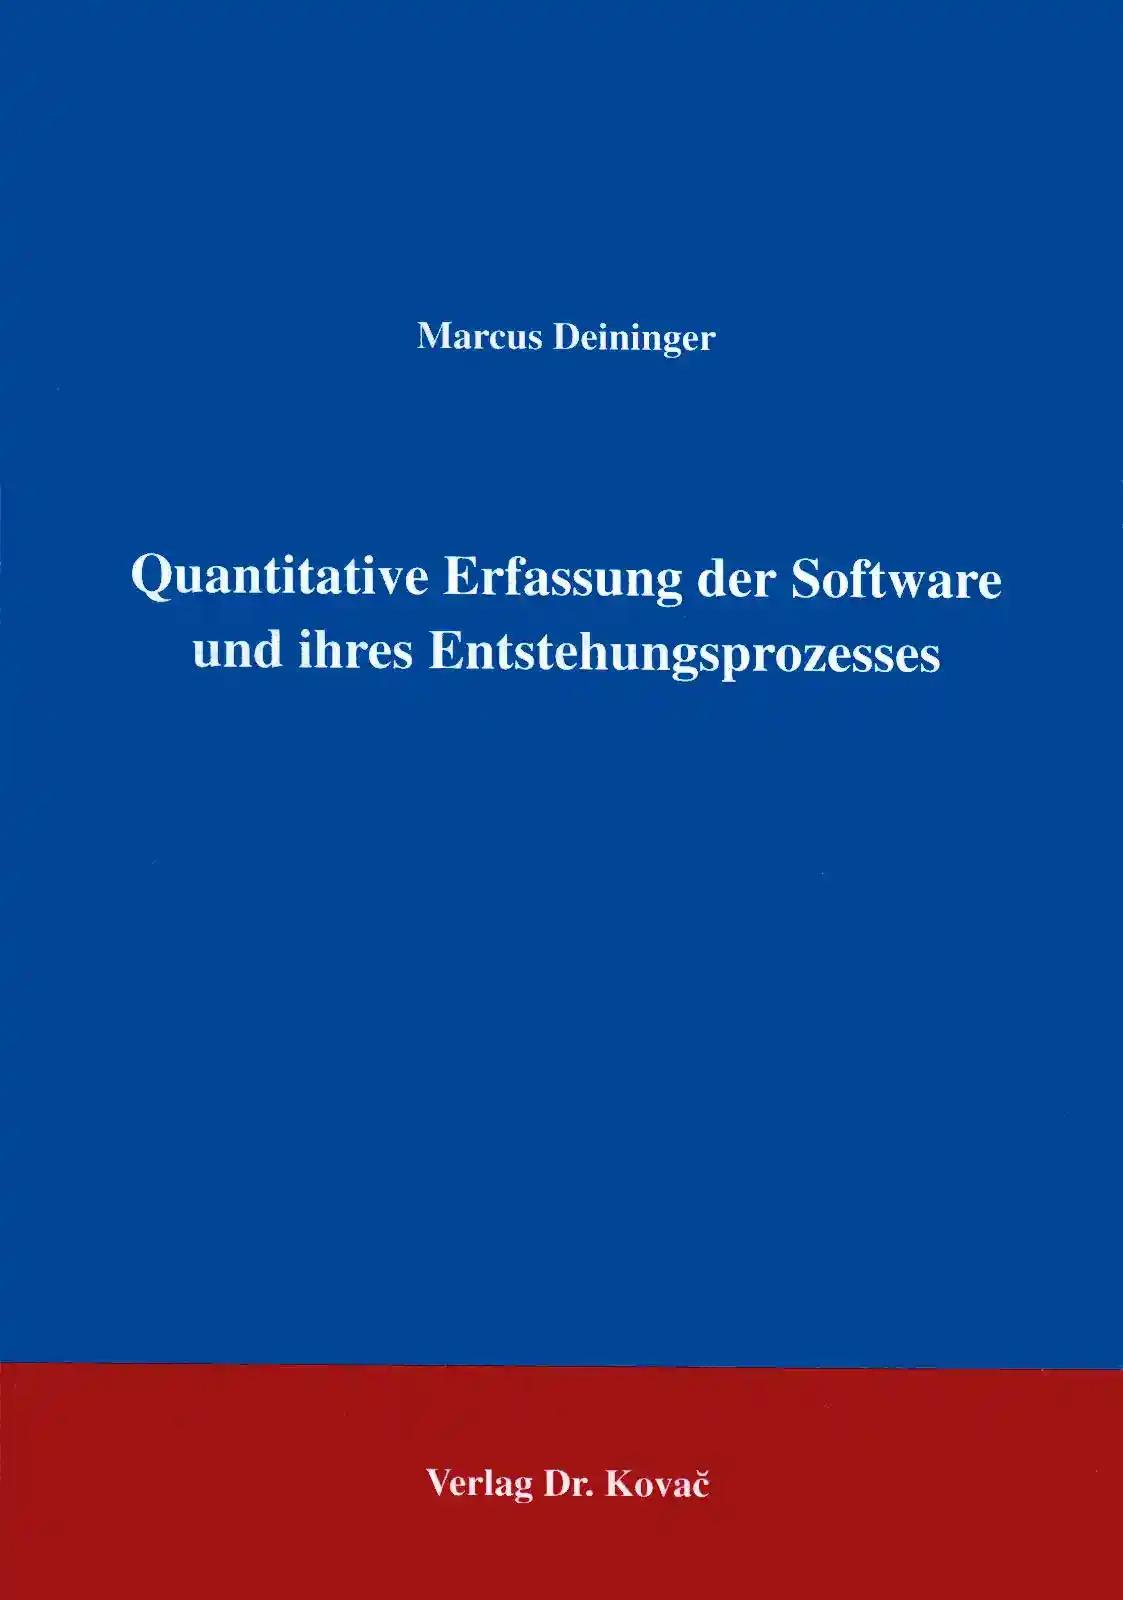 Quantitative Erfassung der Software und ihres Entstehungsprozesses, - Marcus Deininger